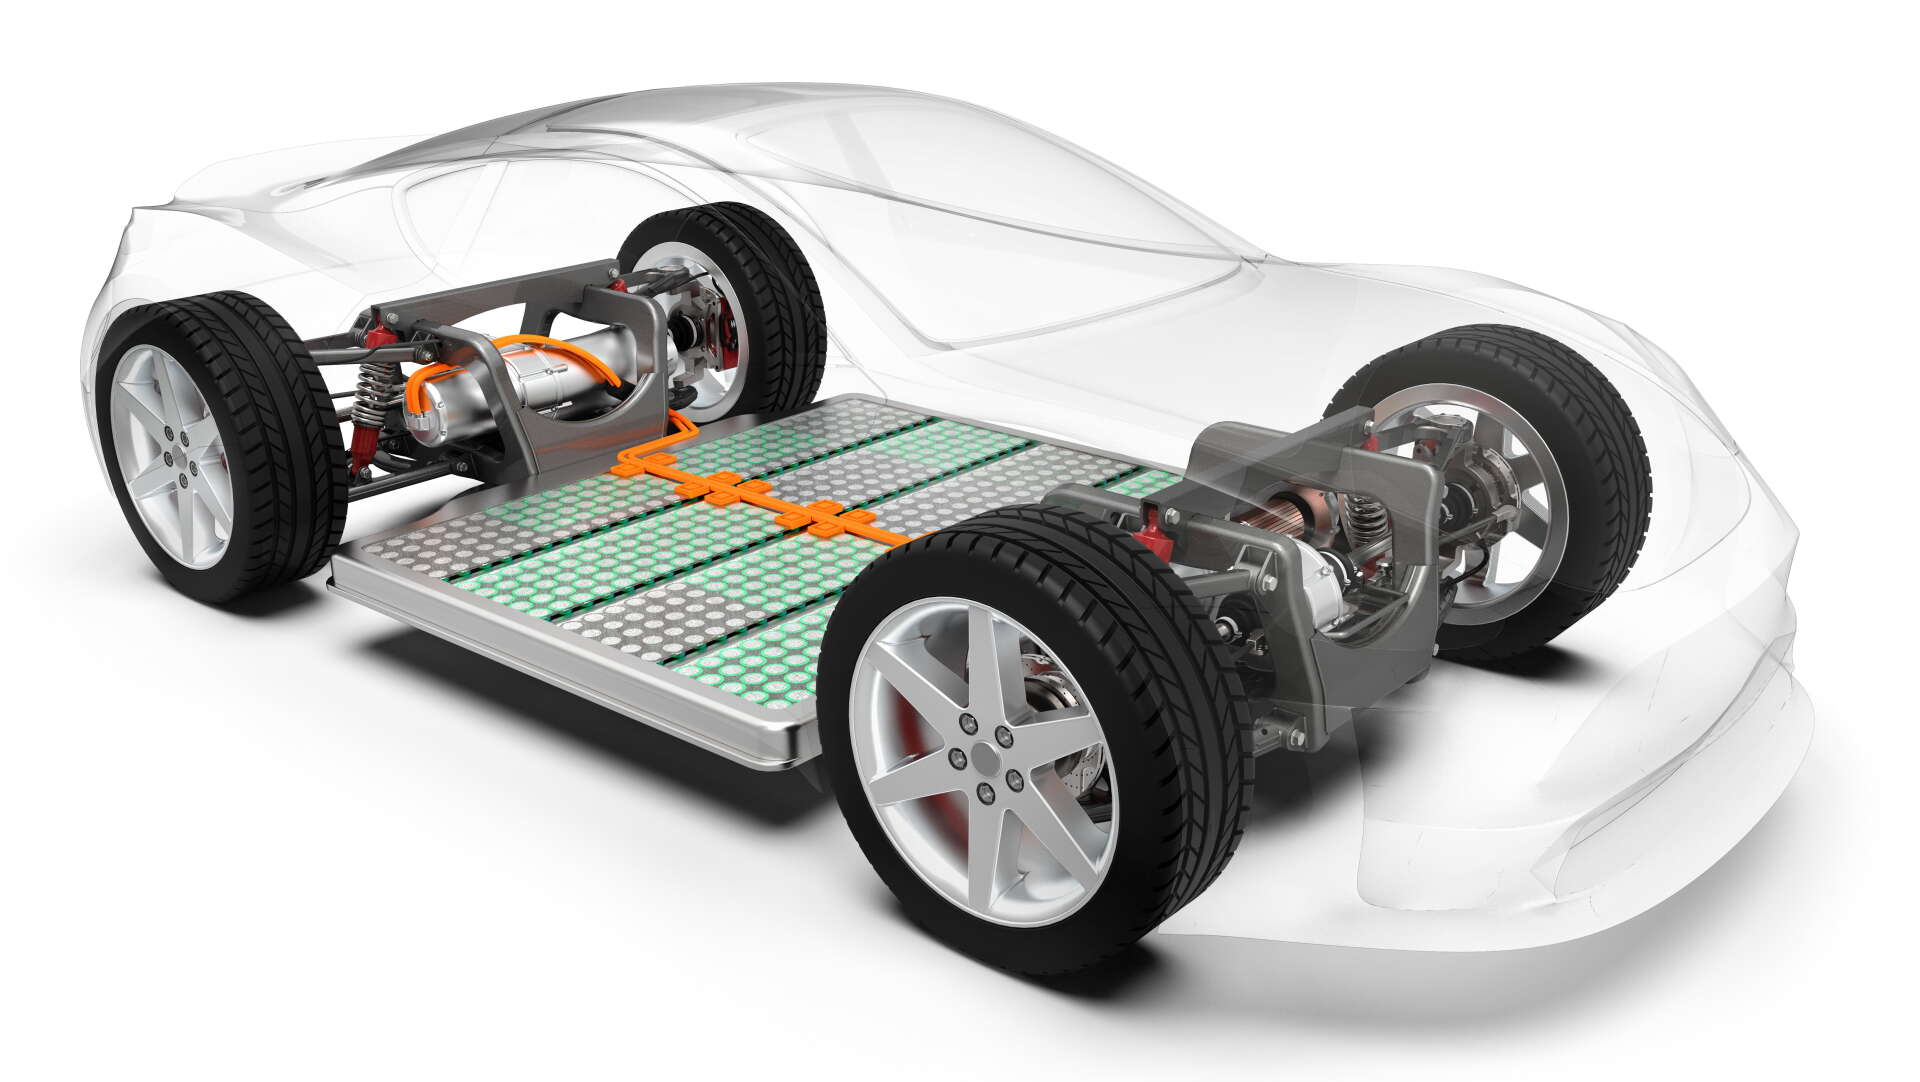 Högspänningsbatteriet ligger i ett skyddande tråg under fordonets golv. 